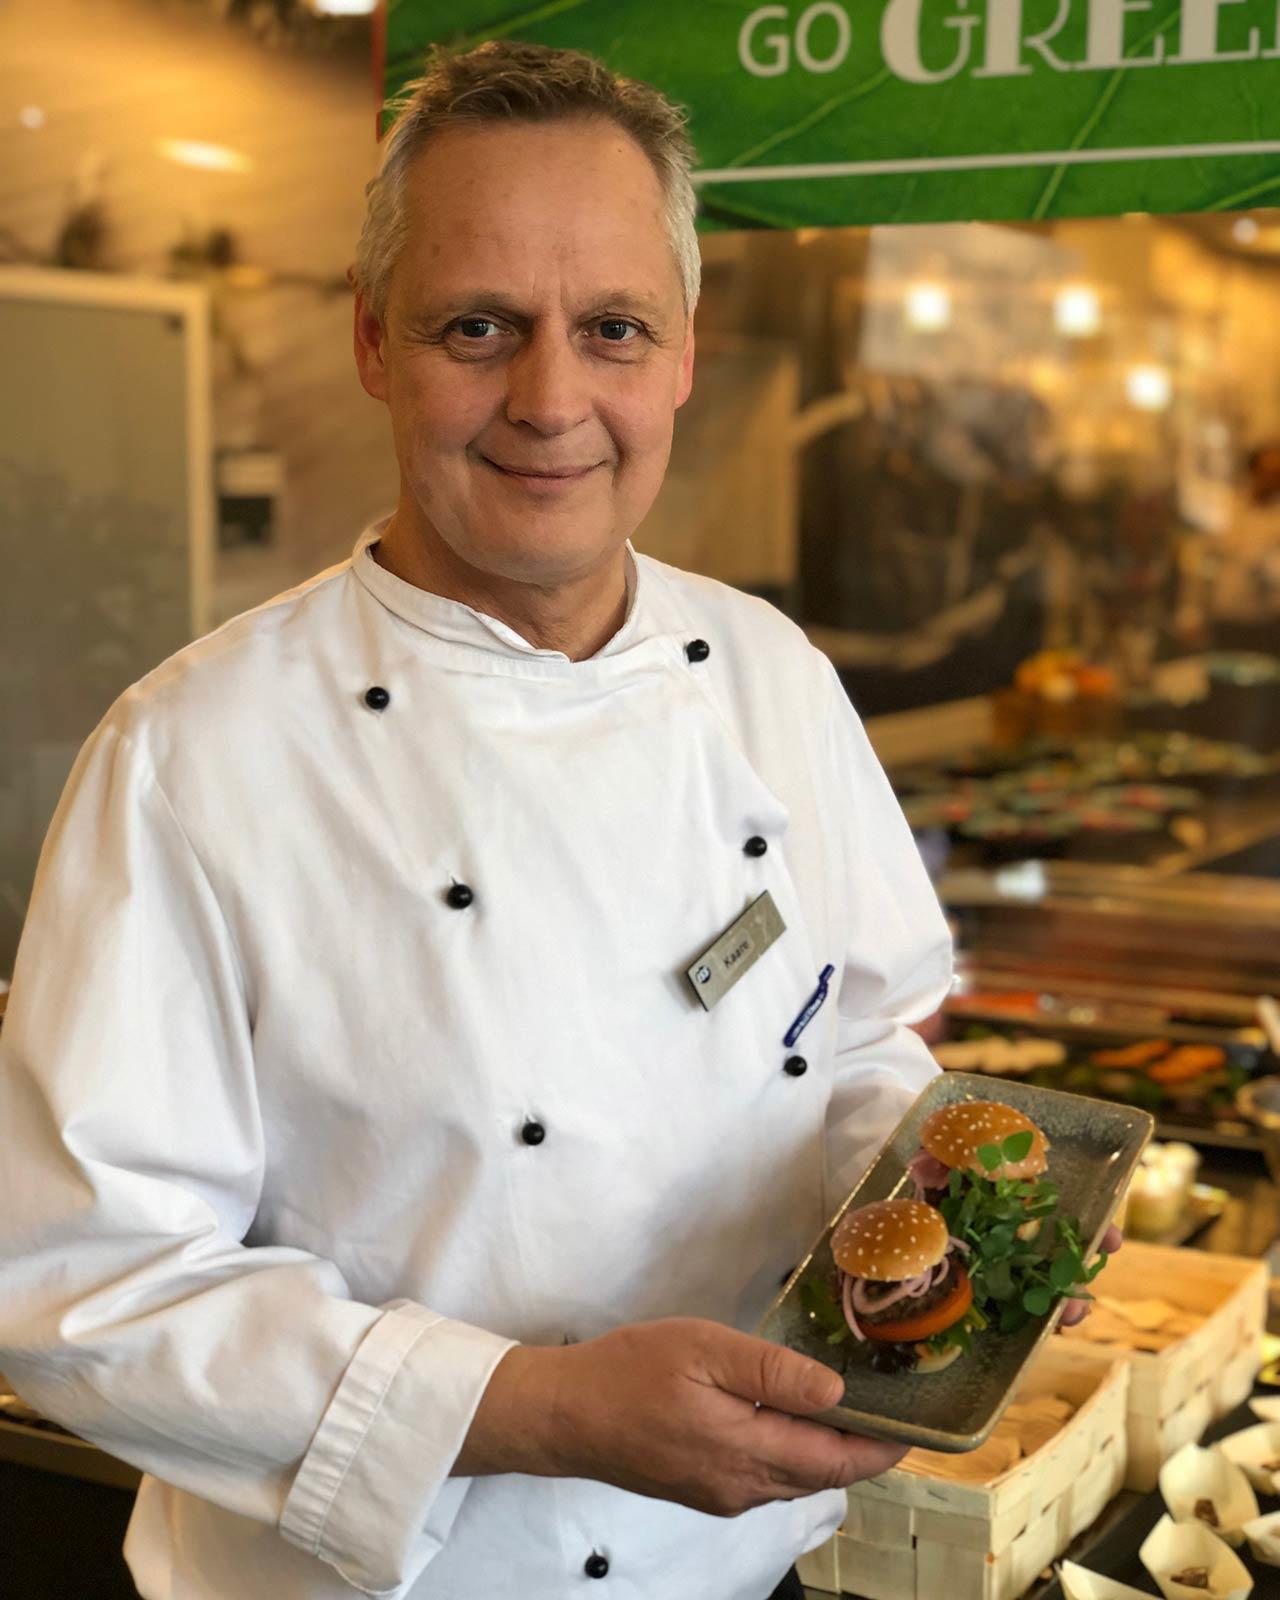 Køkkenchef Kaare Nielsen fra Danske Banks kantine praesenterer burgere med insektkoedet fra Hey Planet.